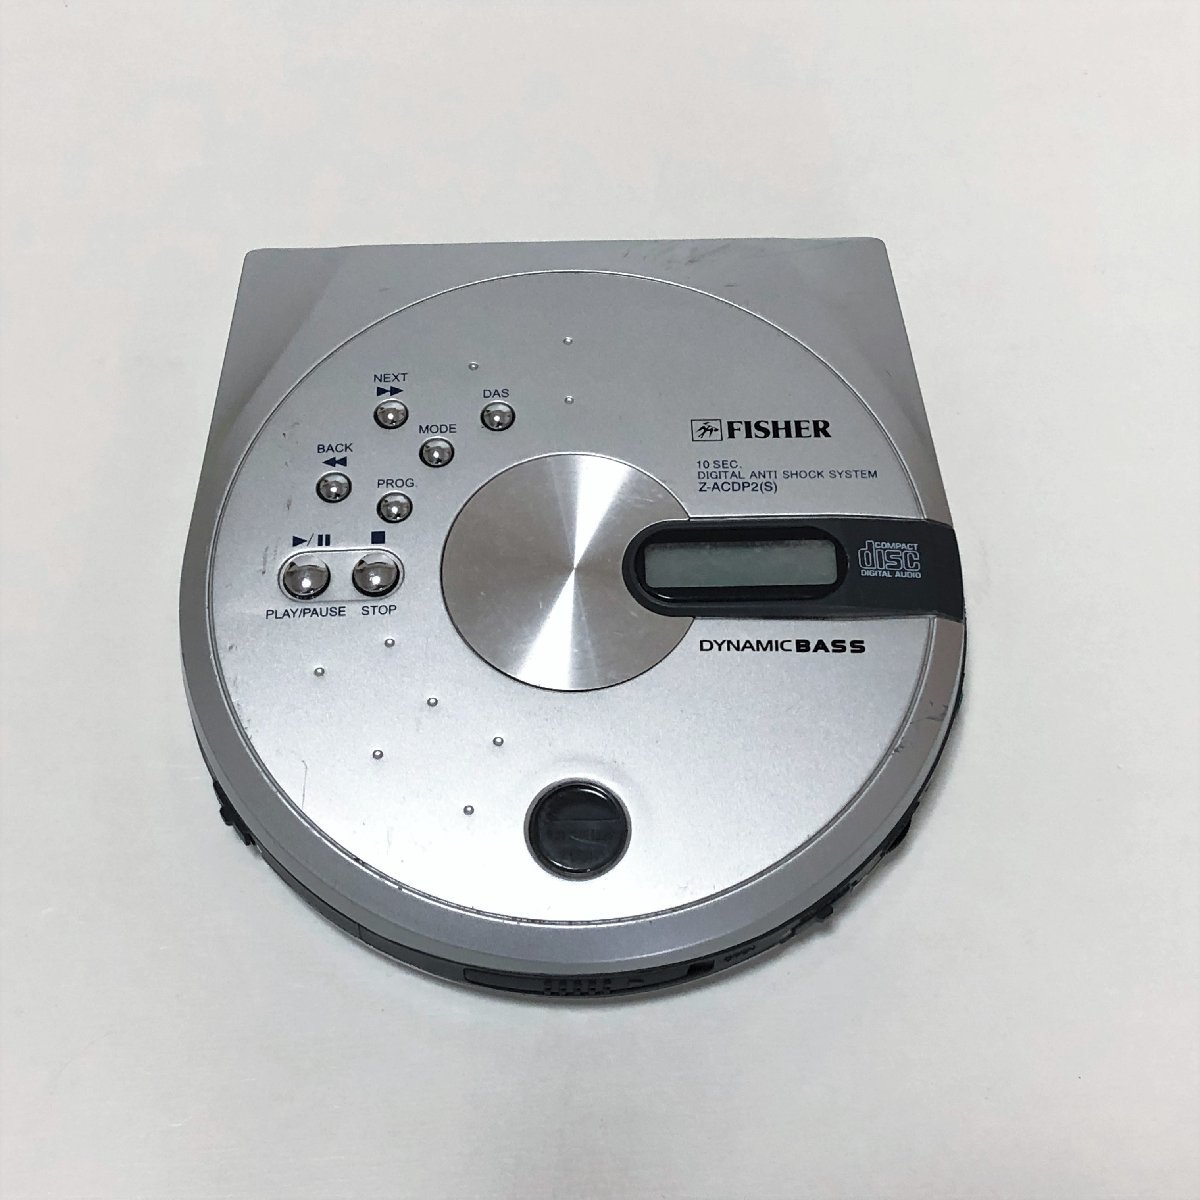 FISHER CD プレーヤー　Z-ACDP2(S)/am-K-28-4582-.4/本体/通電確認済み/安い/レア/高音質/ポータブルCDプレーヤー/シルバー/重低音回路搭載